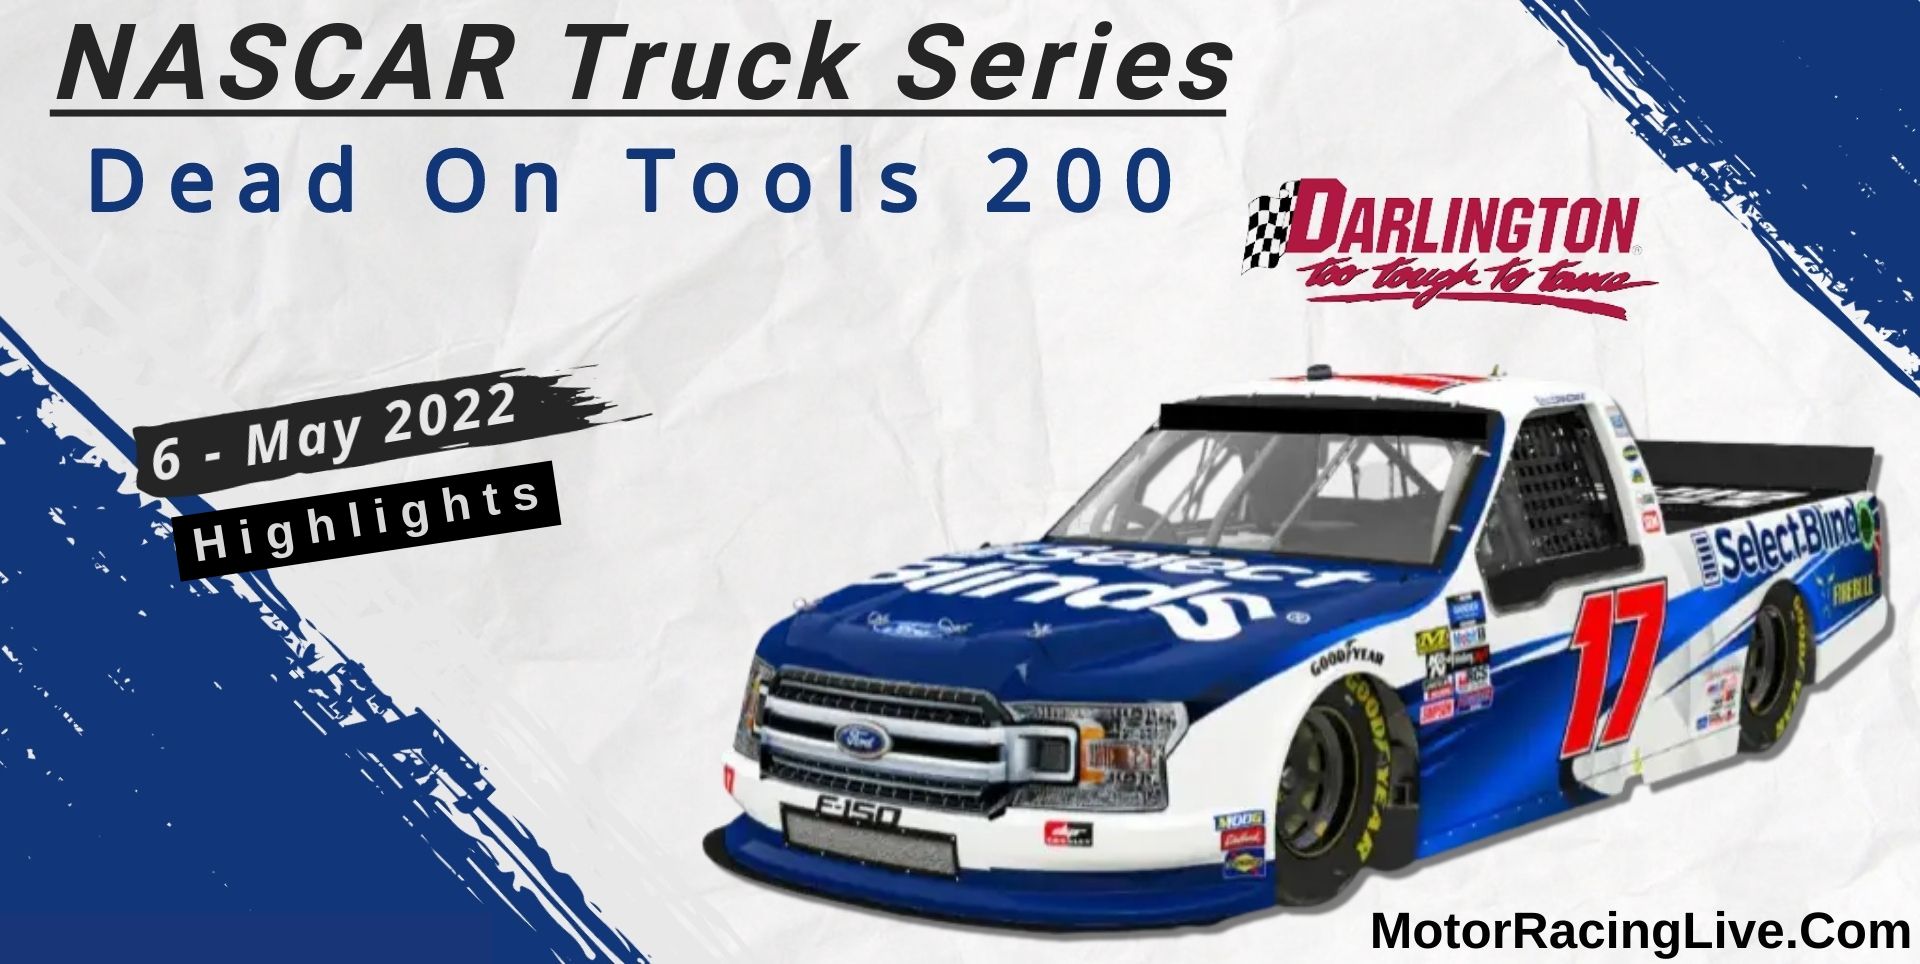 Dead On Tools 200 Highlights 2022 NASCAR Truck